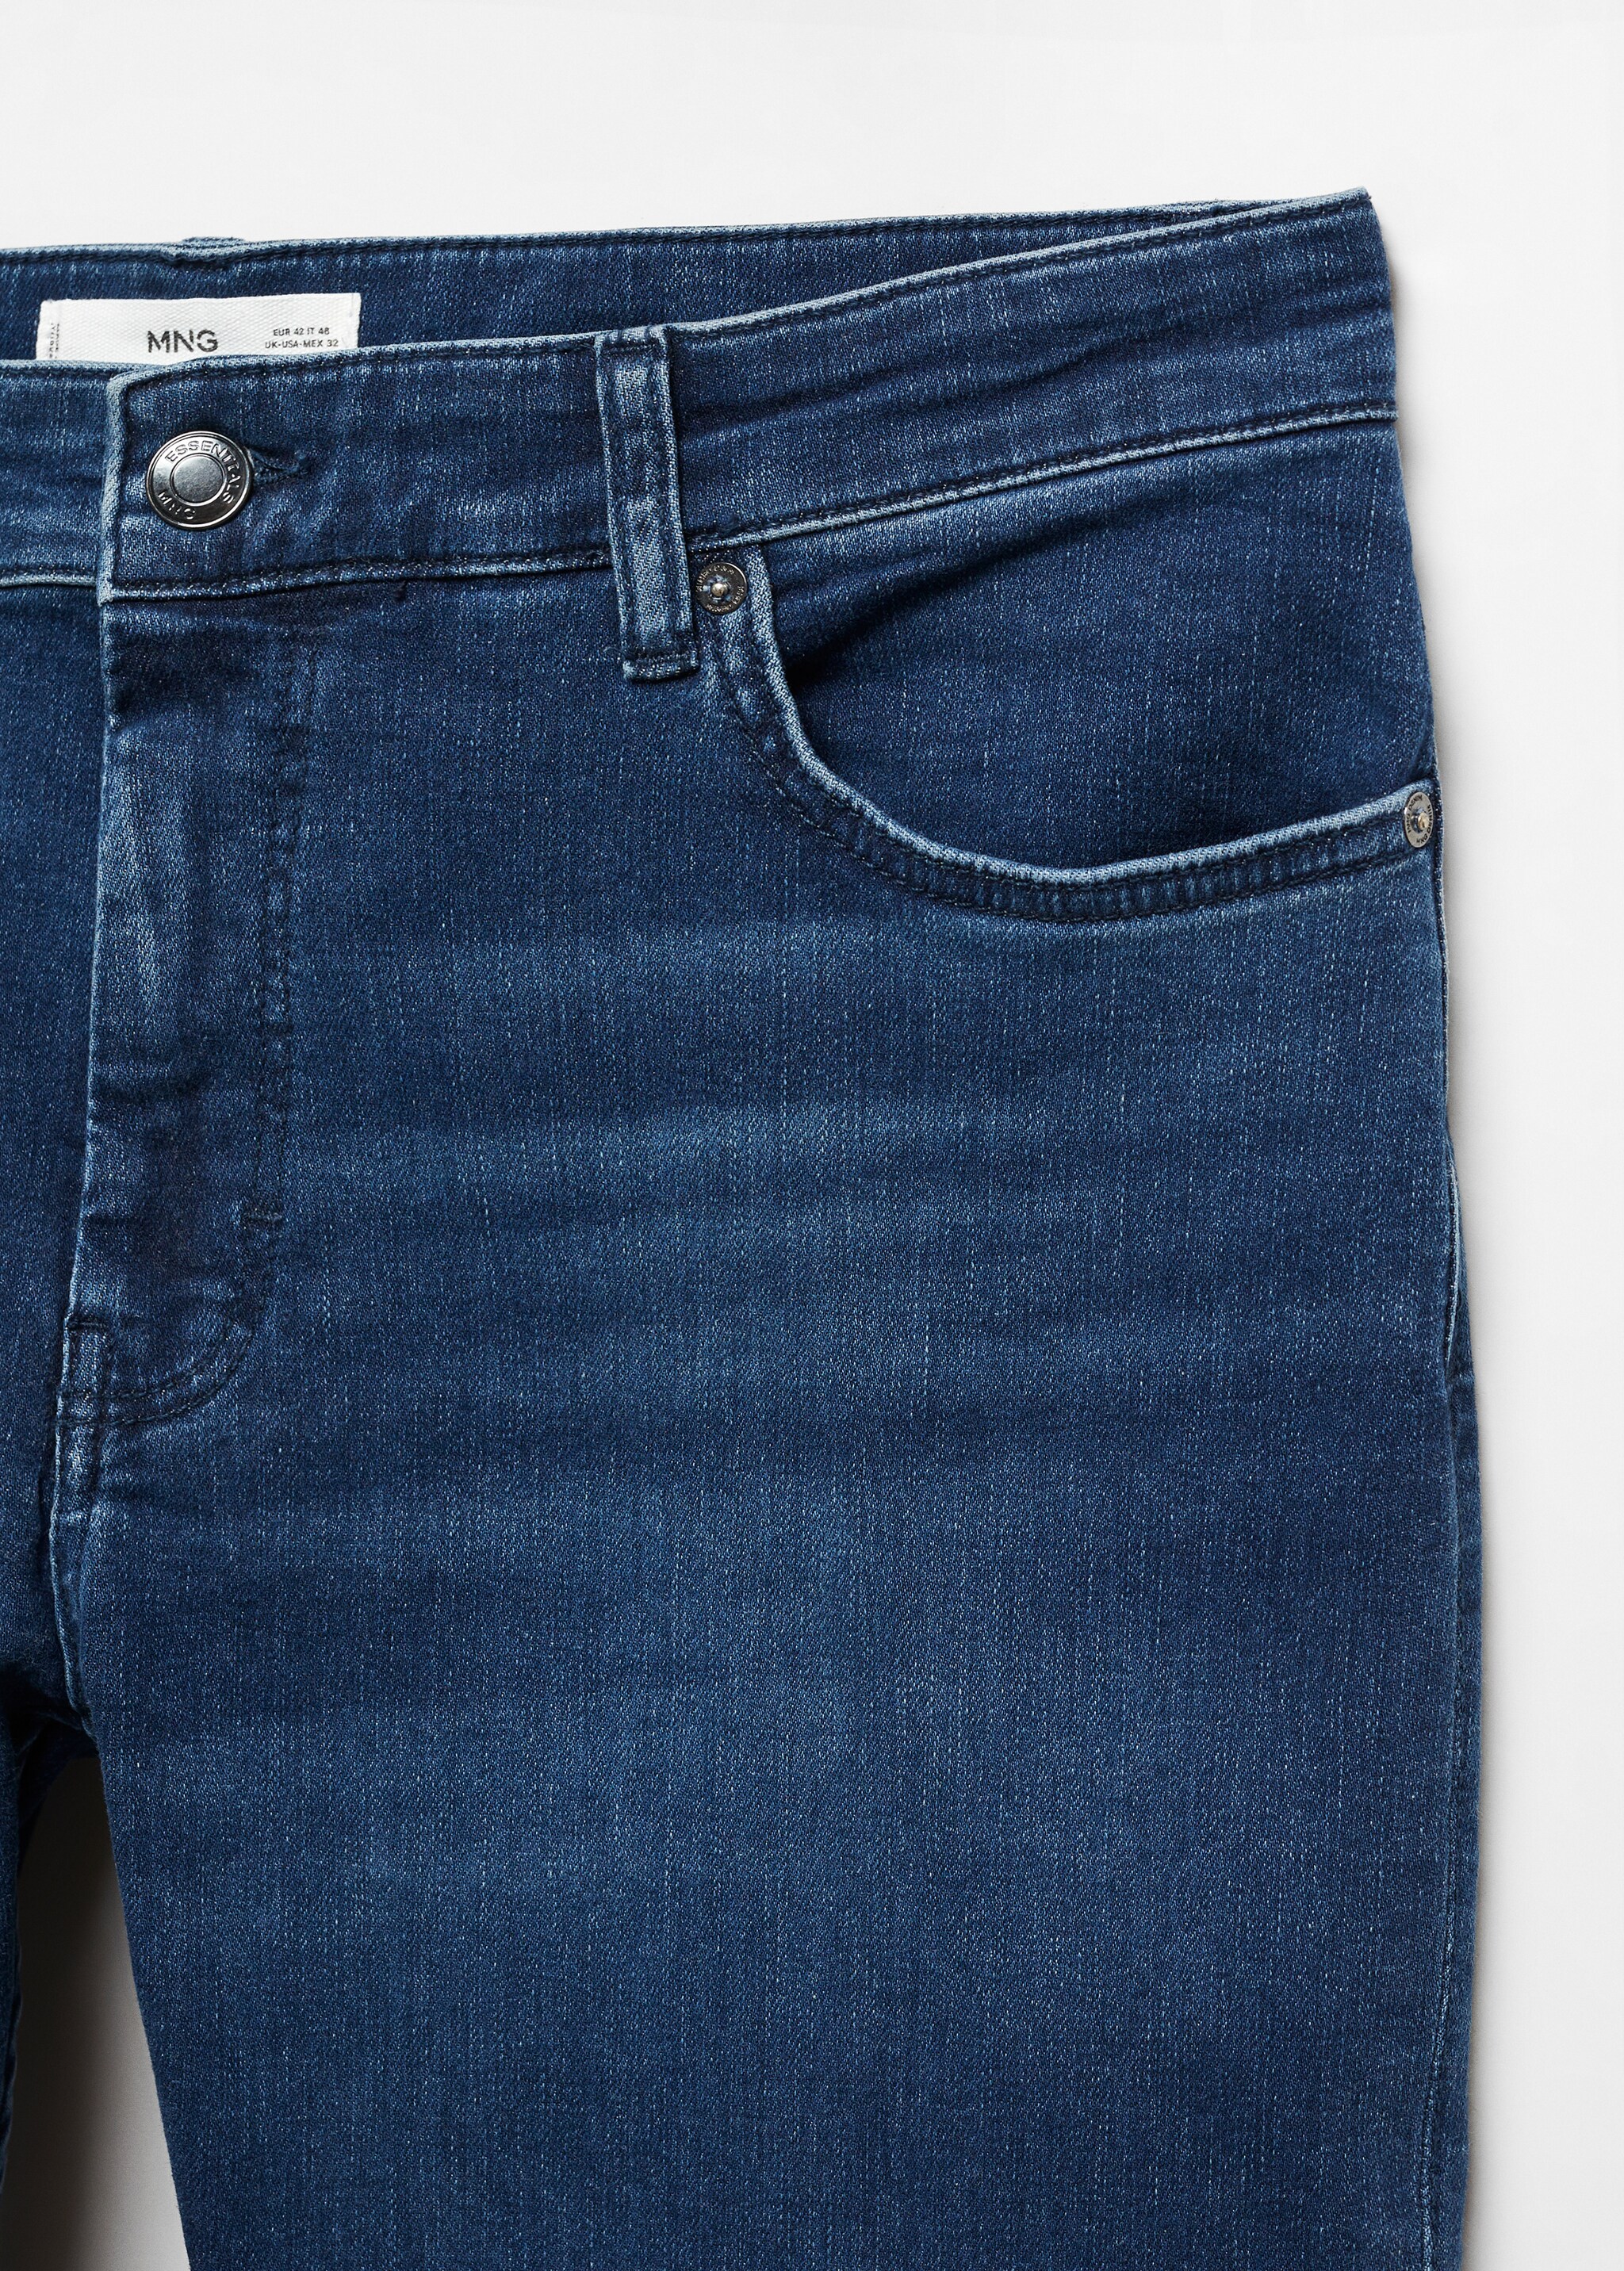 Jeans Patrick slim fit Ultra Soft Touch - Pormenor do artigo 8